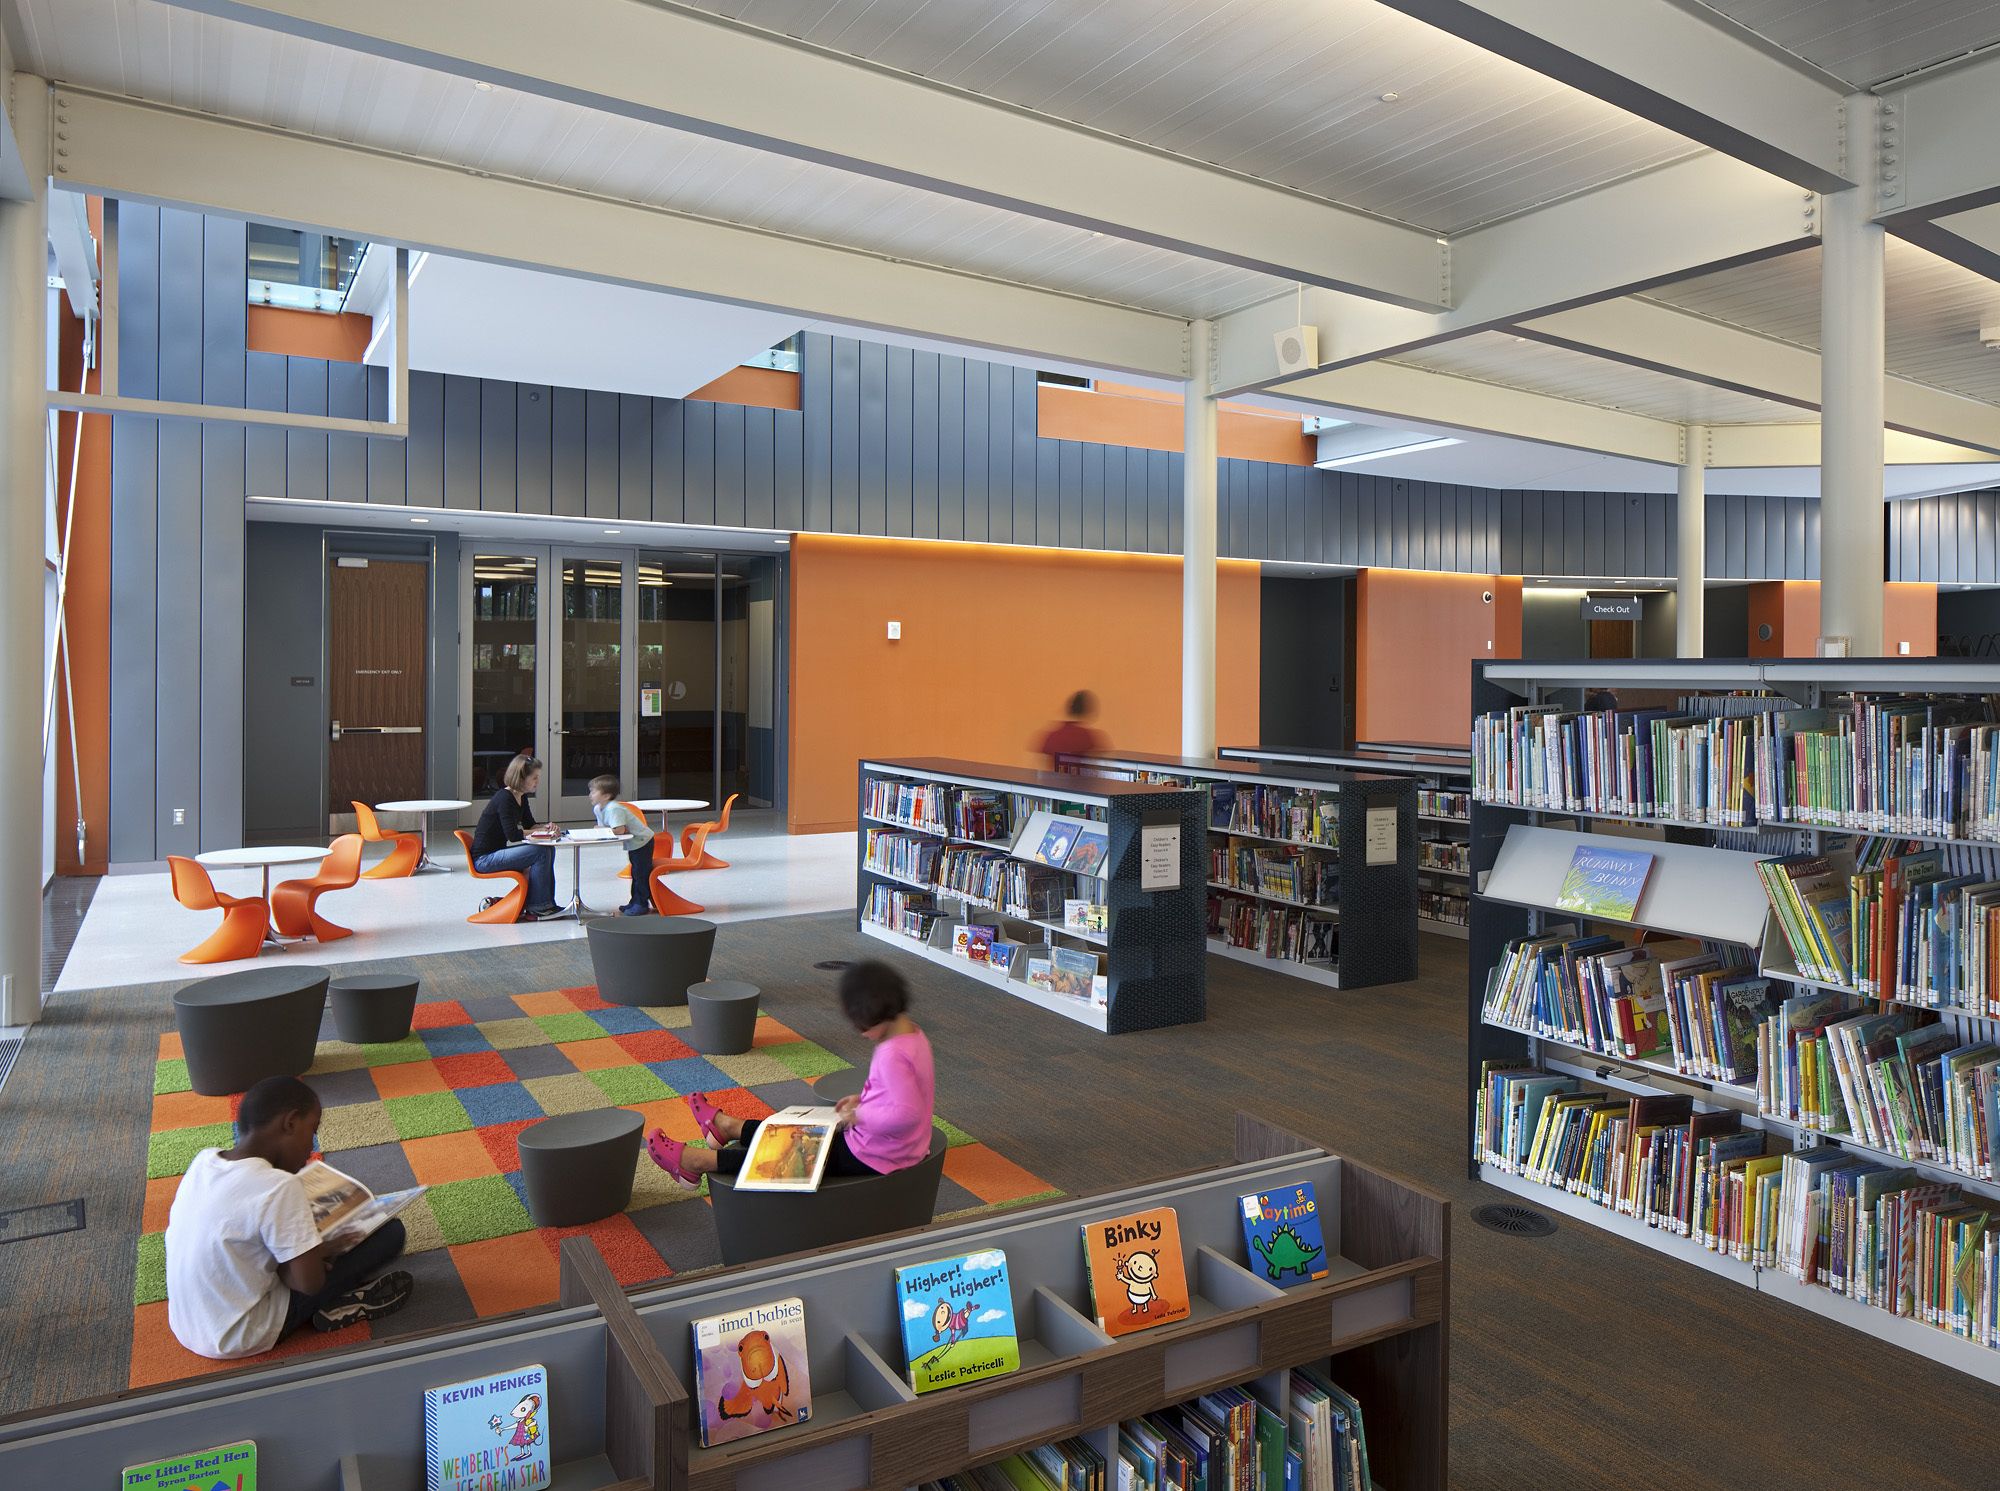 Библиотека открывалась в восемь. Современная библиотека. Зонирование пространства в библиотеке. Современная библиотека в школе. Интерьер общественной библиотеки.